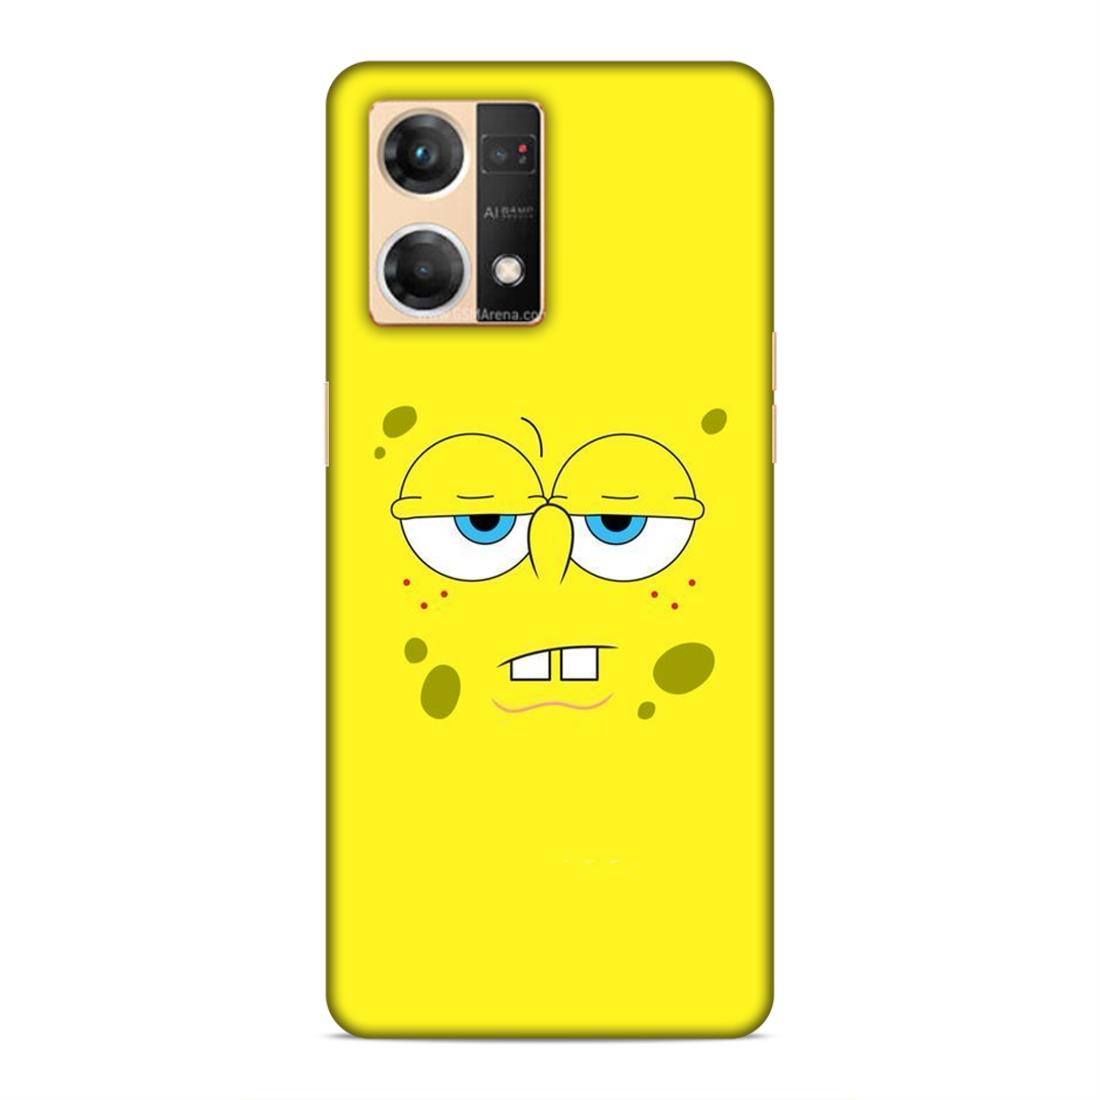 Spongebob Hard Back Case For Oppo F21 Pro / F21s Pro